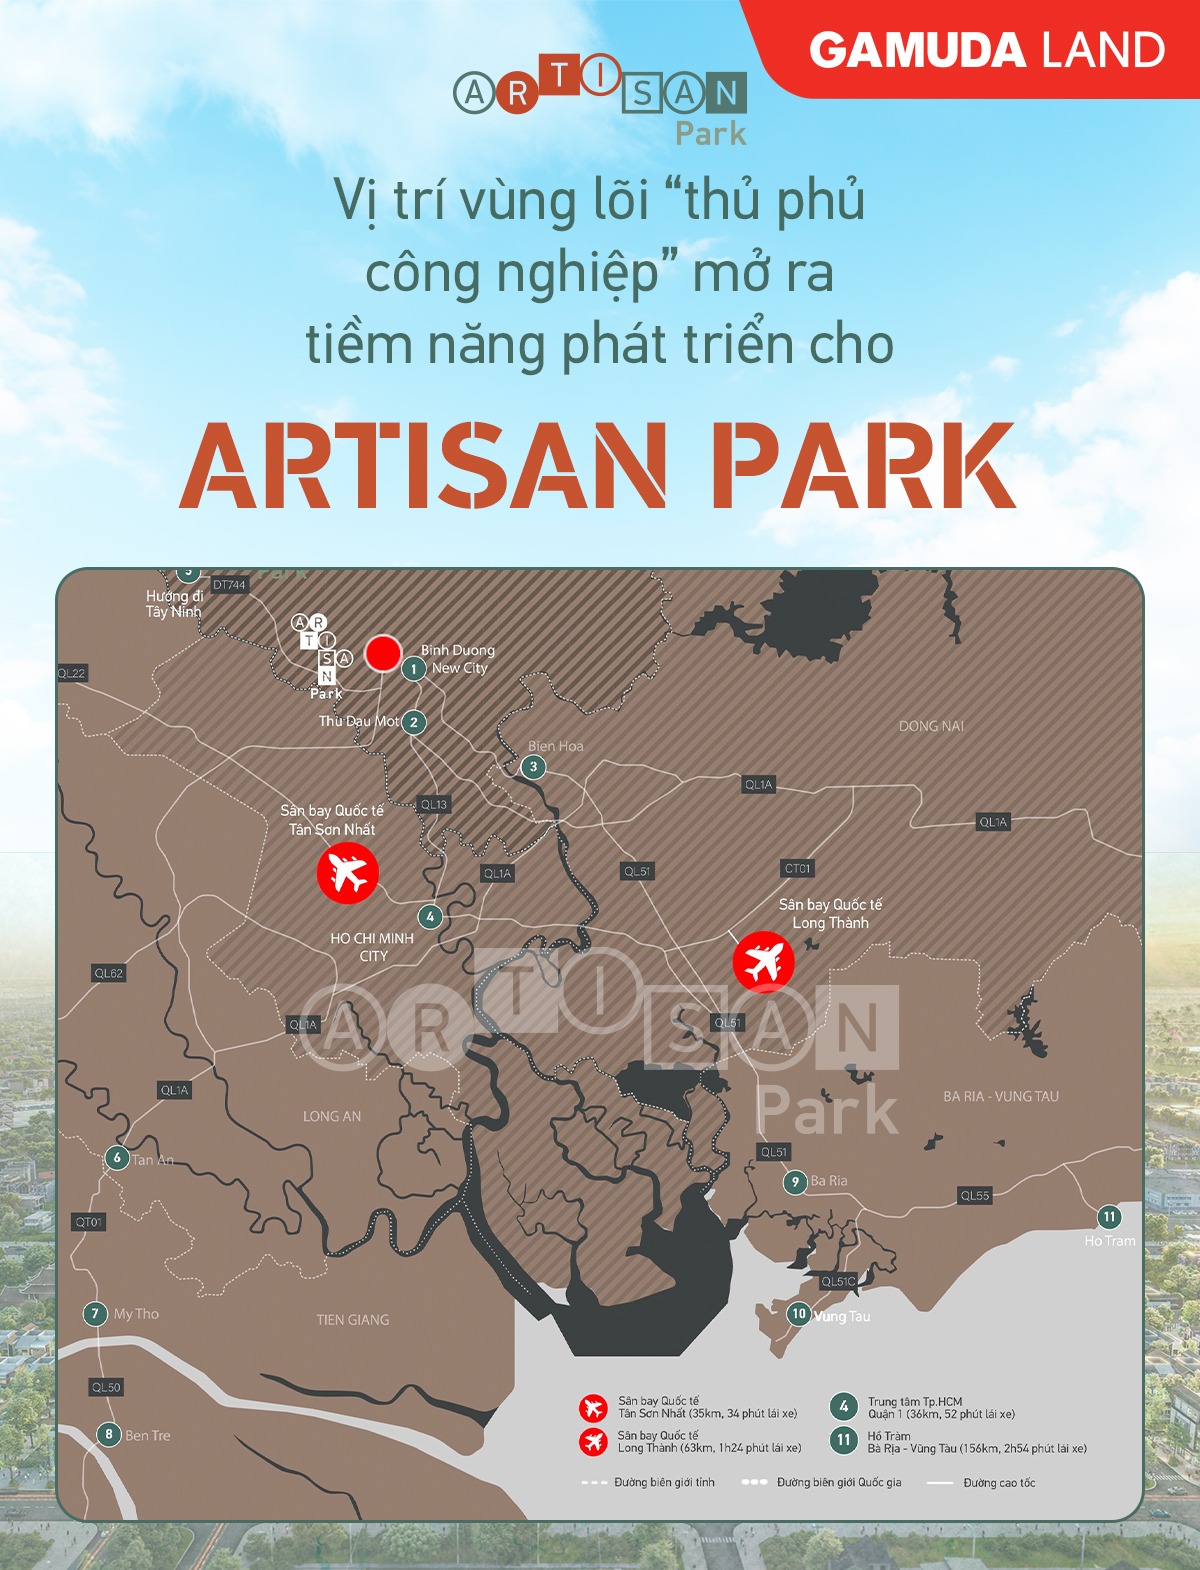 5 yếu tố khiến Artisan Park là dự án đáng đầu tư bậc nhất - Ảnh 2.